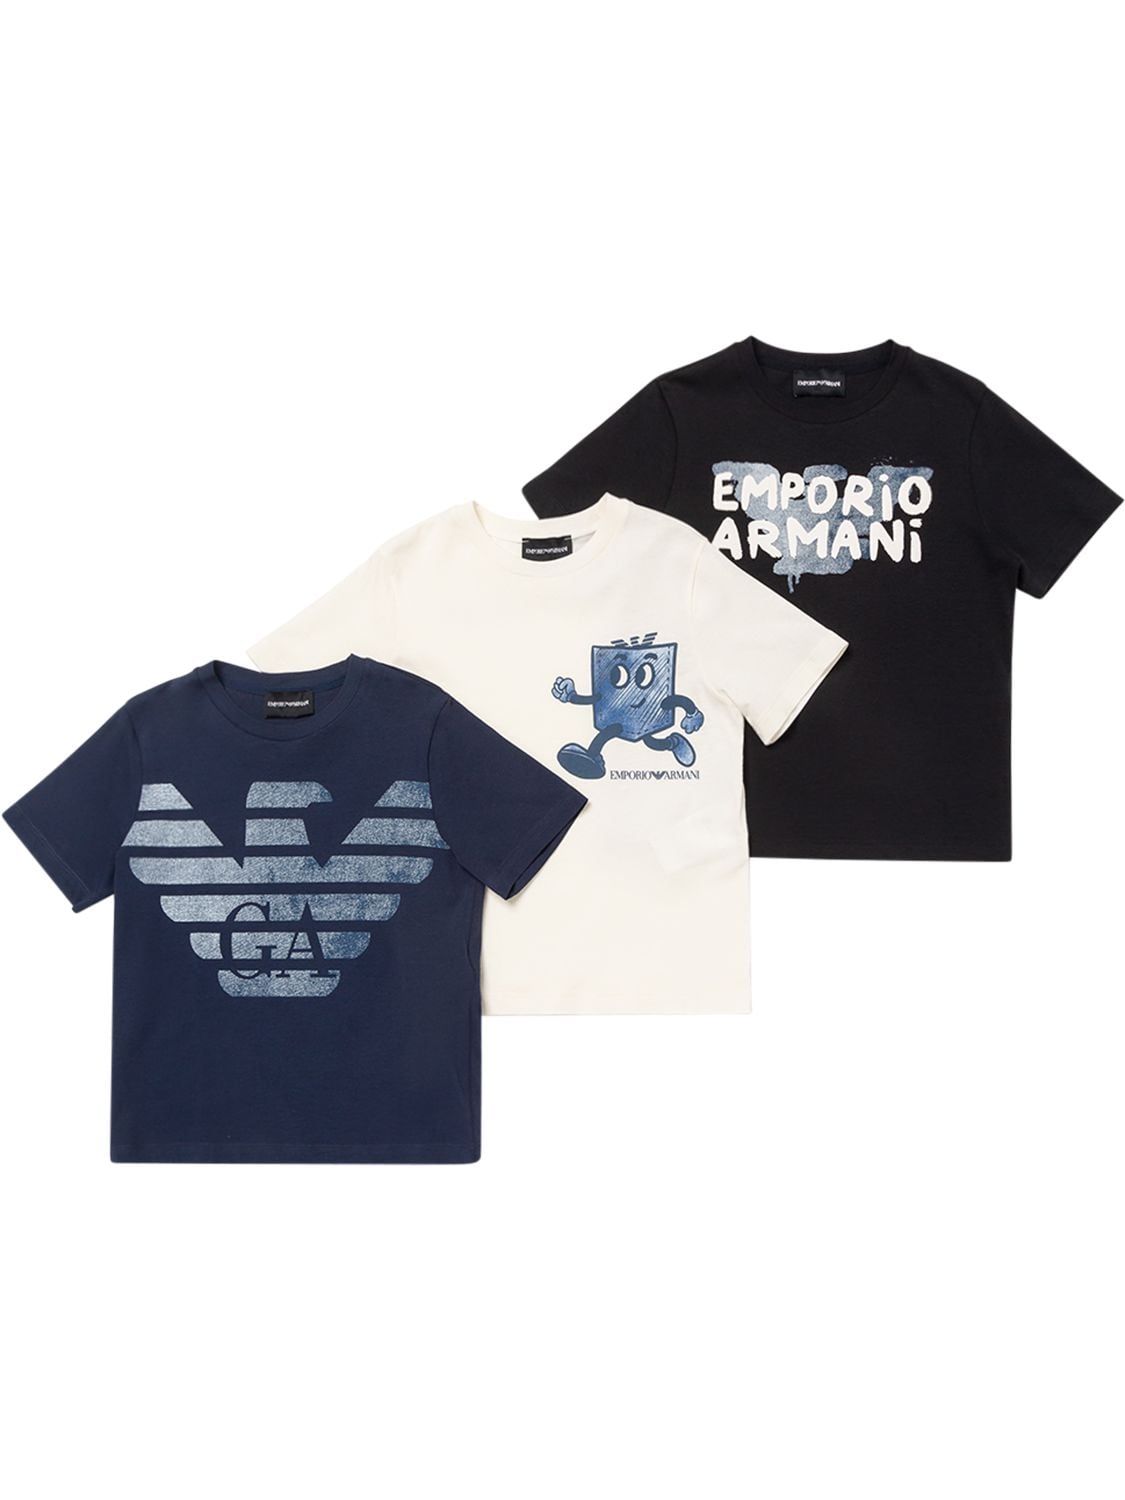 Emporio Armani Kids' 印花棉质平纹针织t恤3件套装 In Multicolor